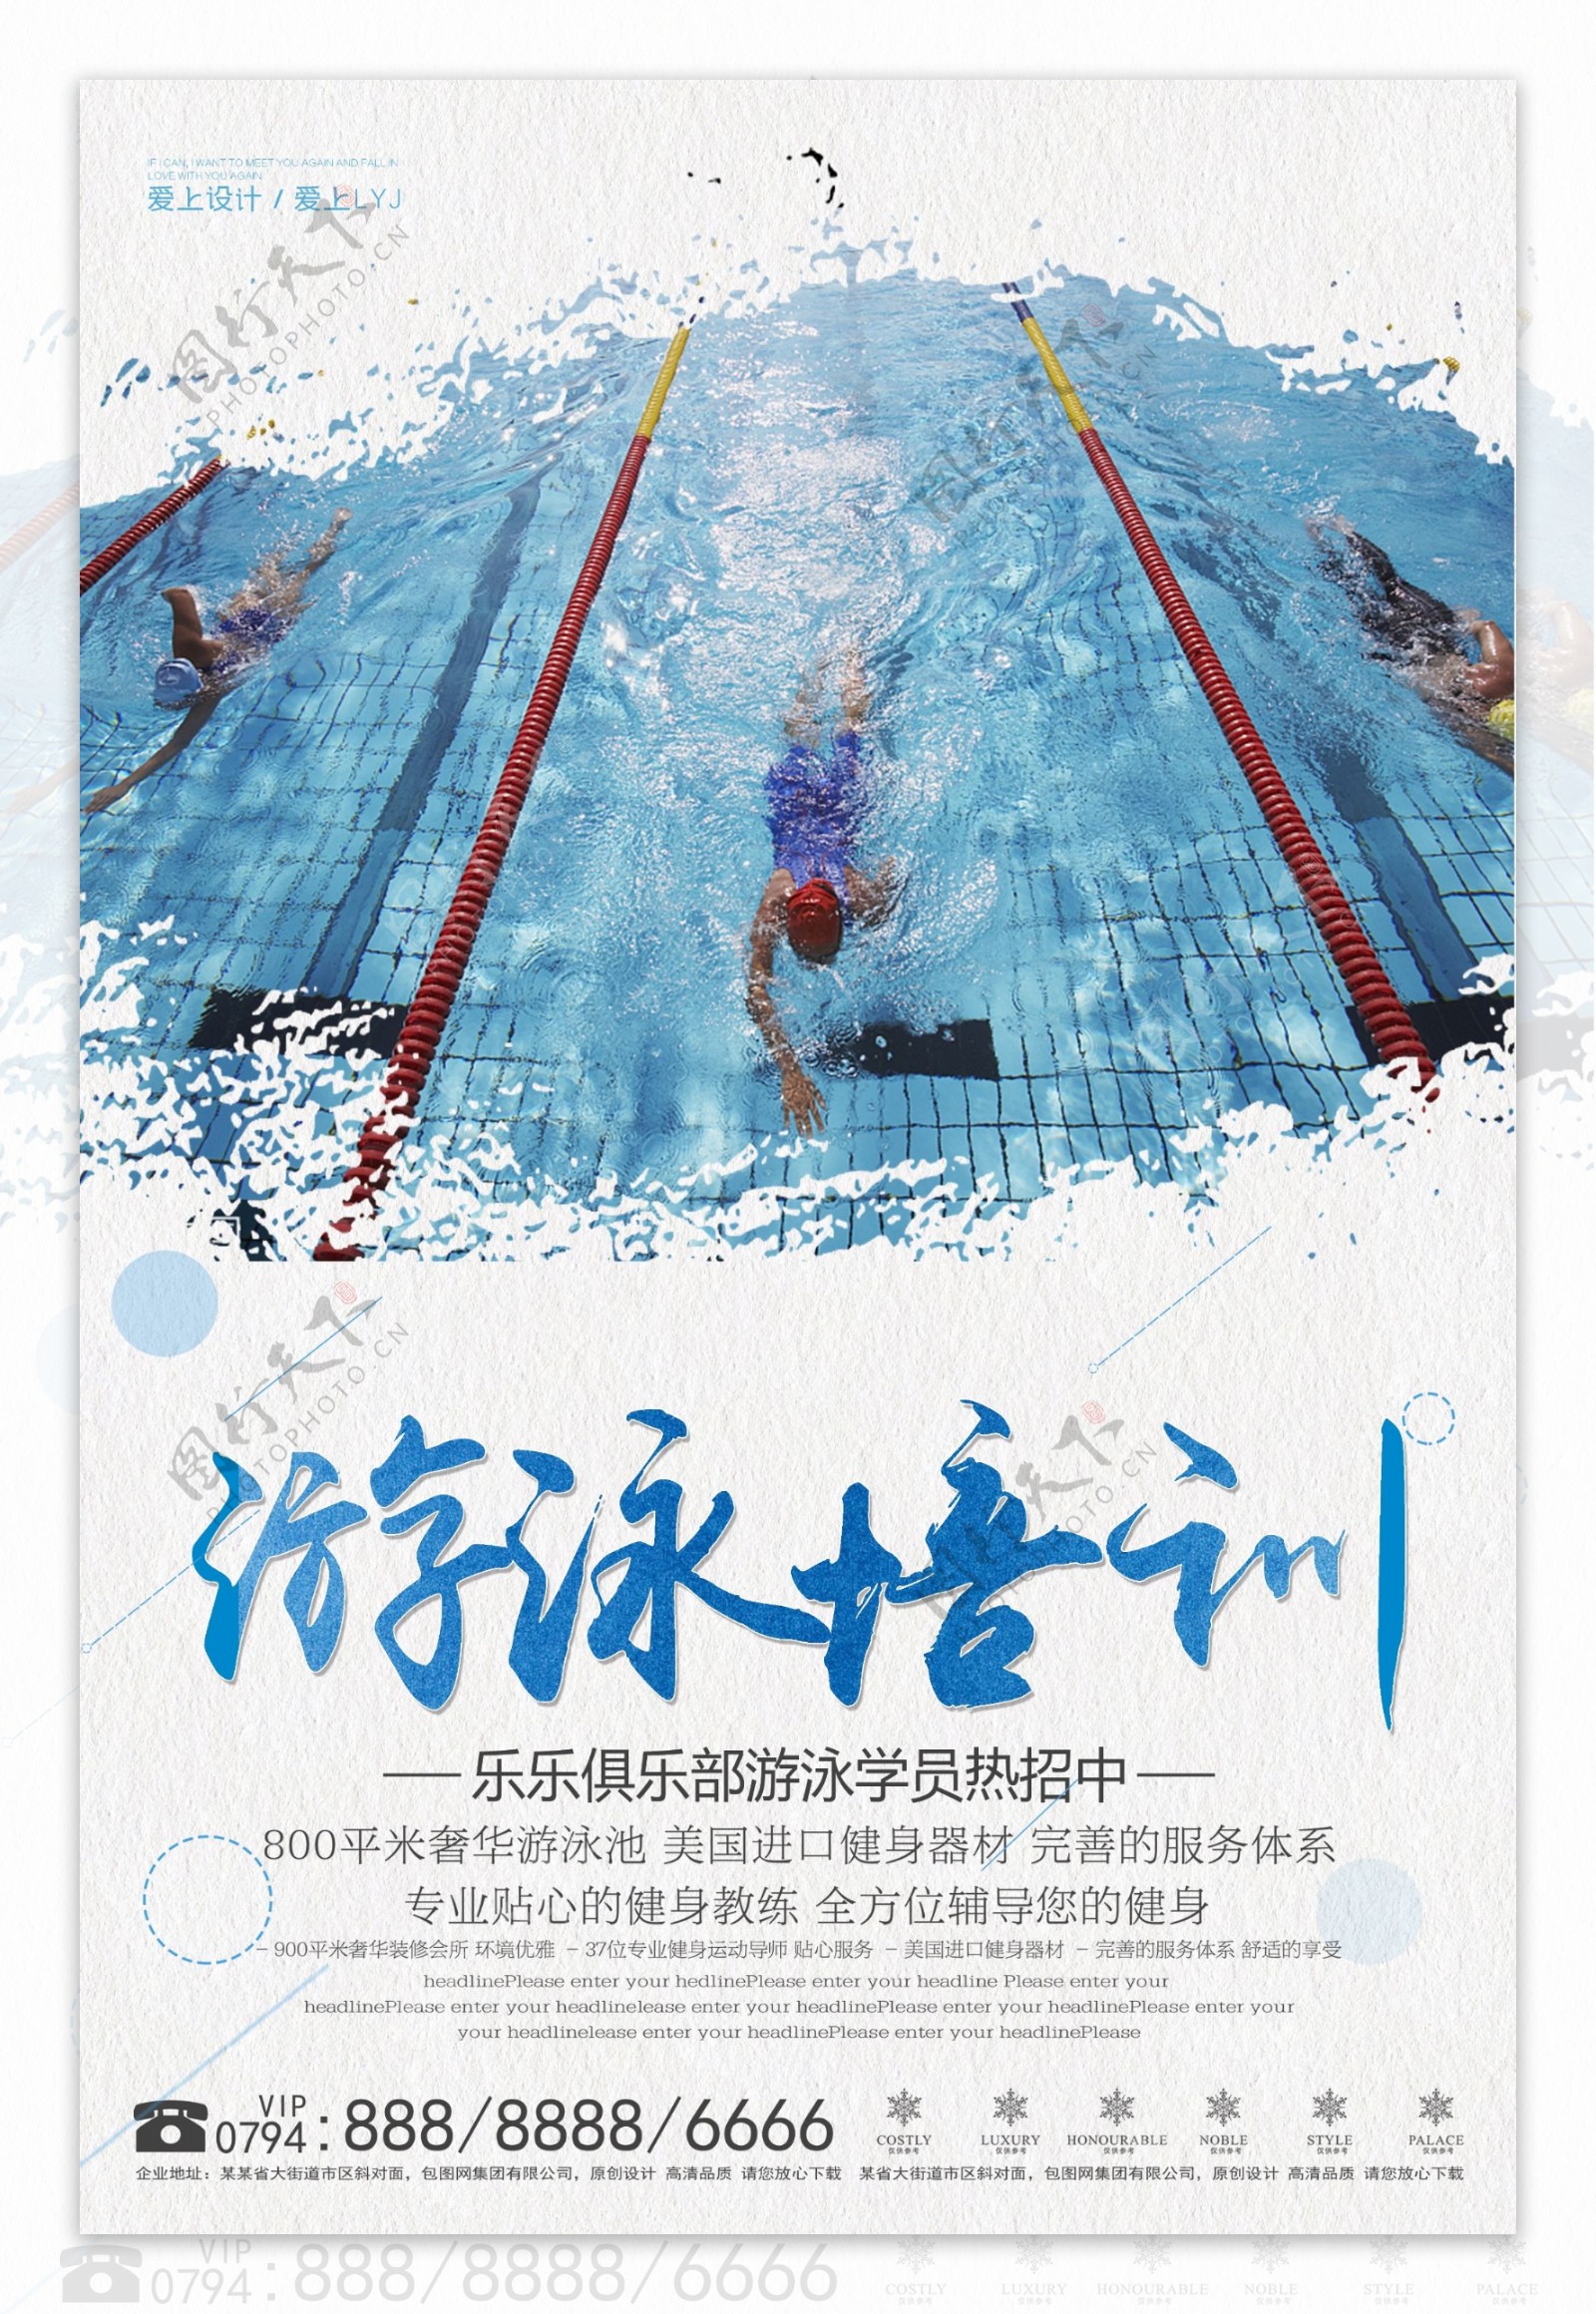 简洁游泳培训招生海报